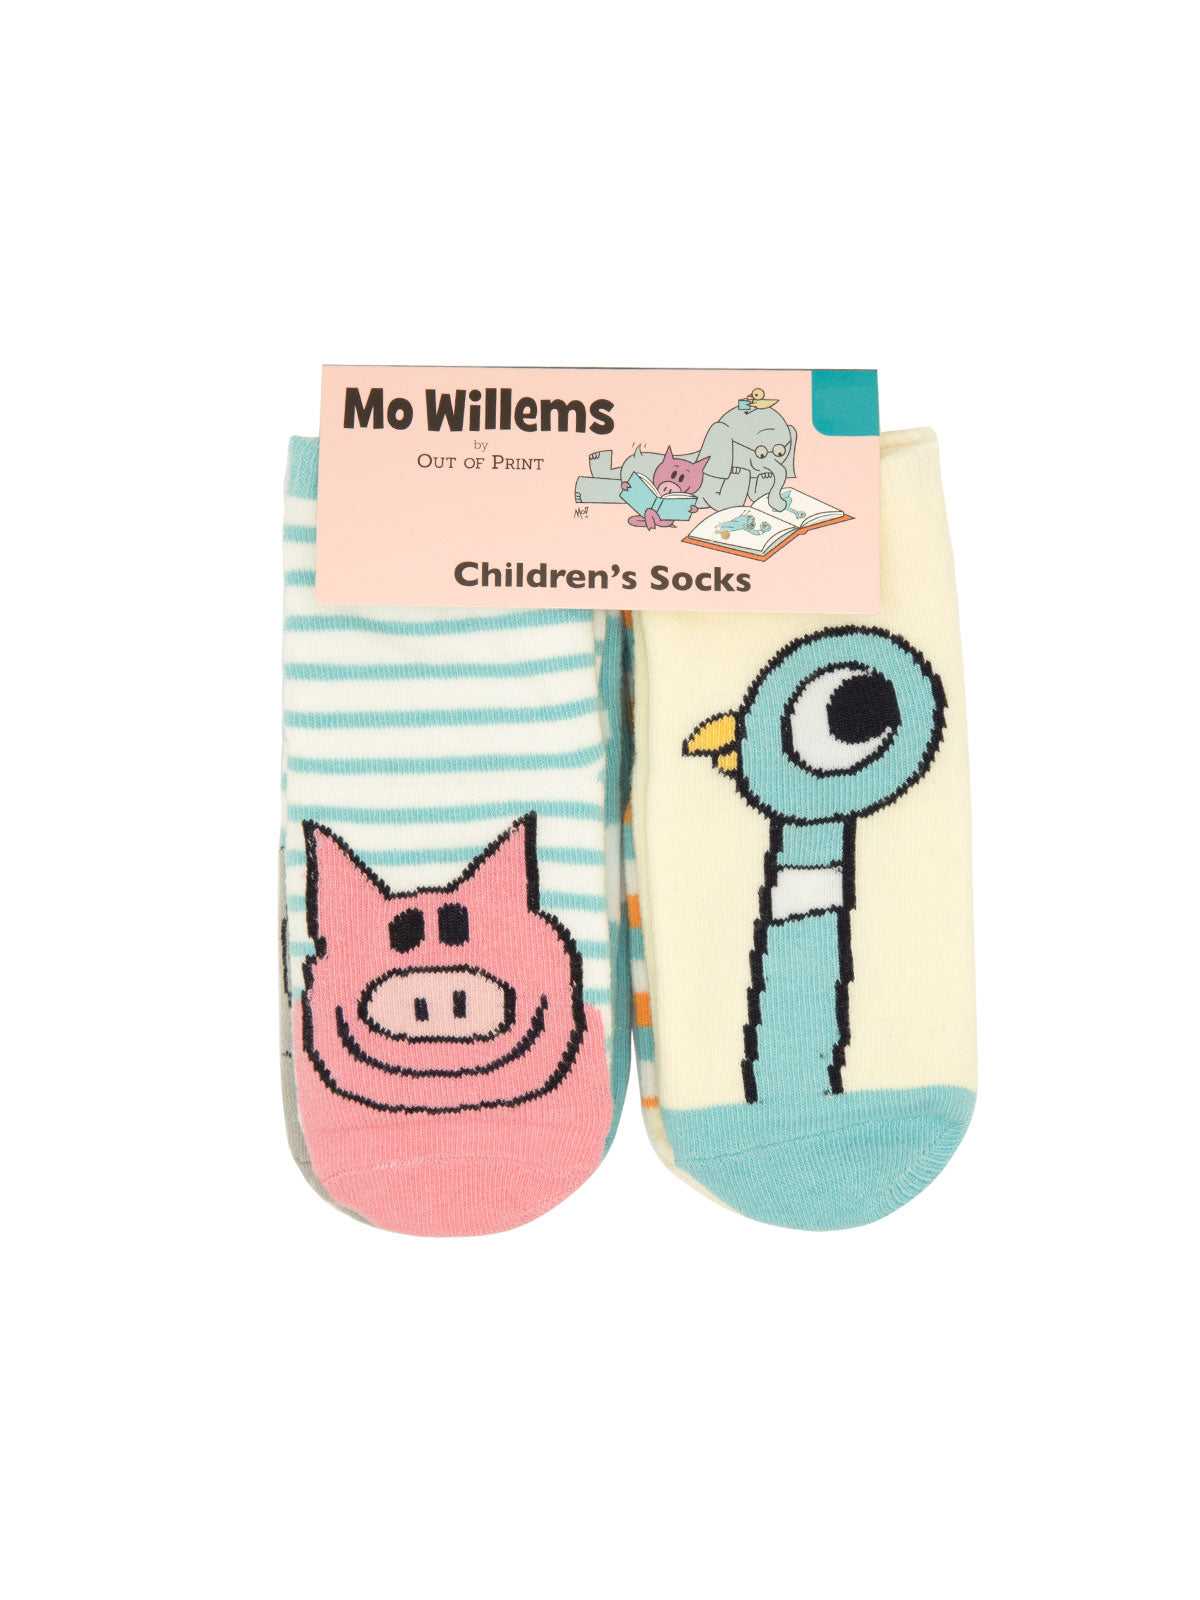 Mo Willems children's socks